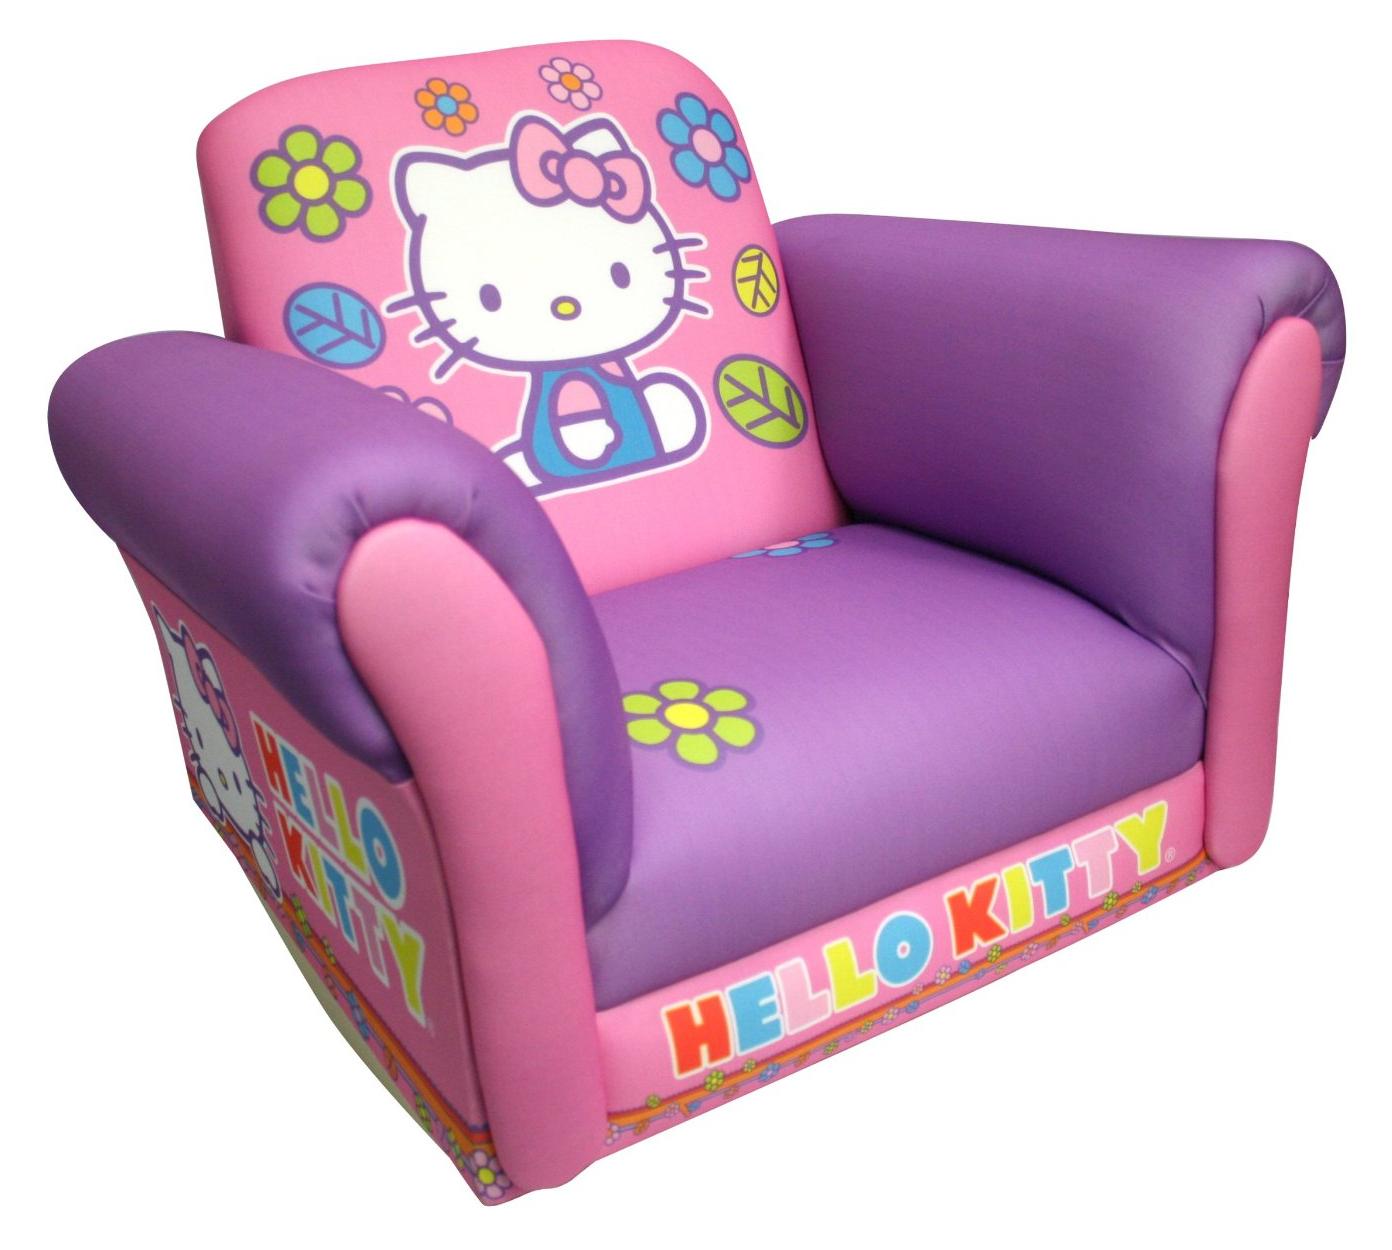   Hello  Kitty  Lover   Hello  Kitty  Furniture